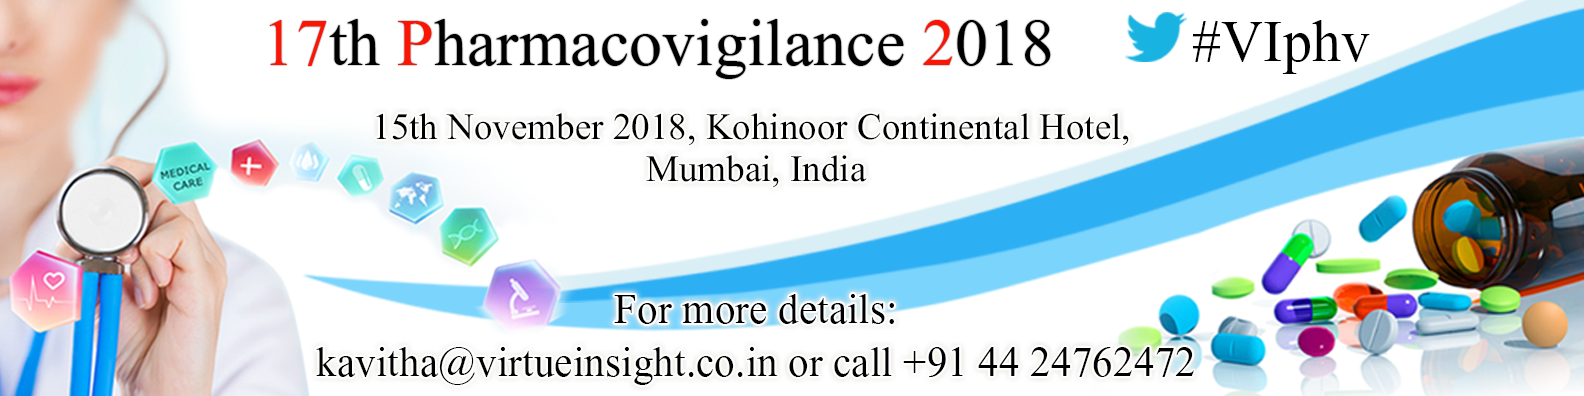 17th Pharmacovigilance 2018, Mumbai, Maharashtra, India